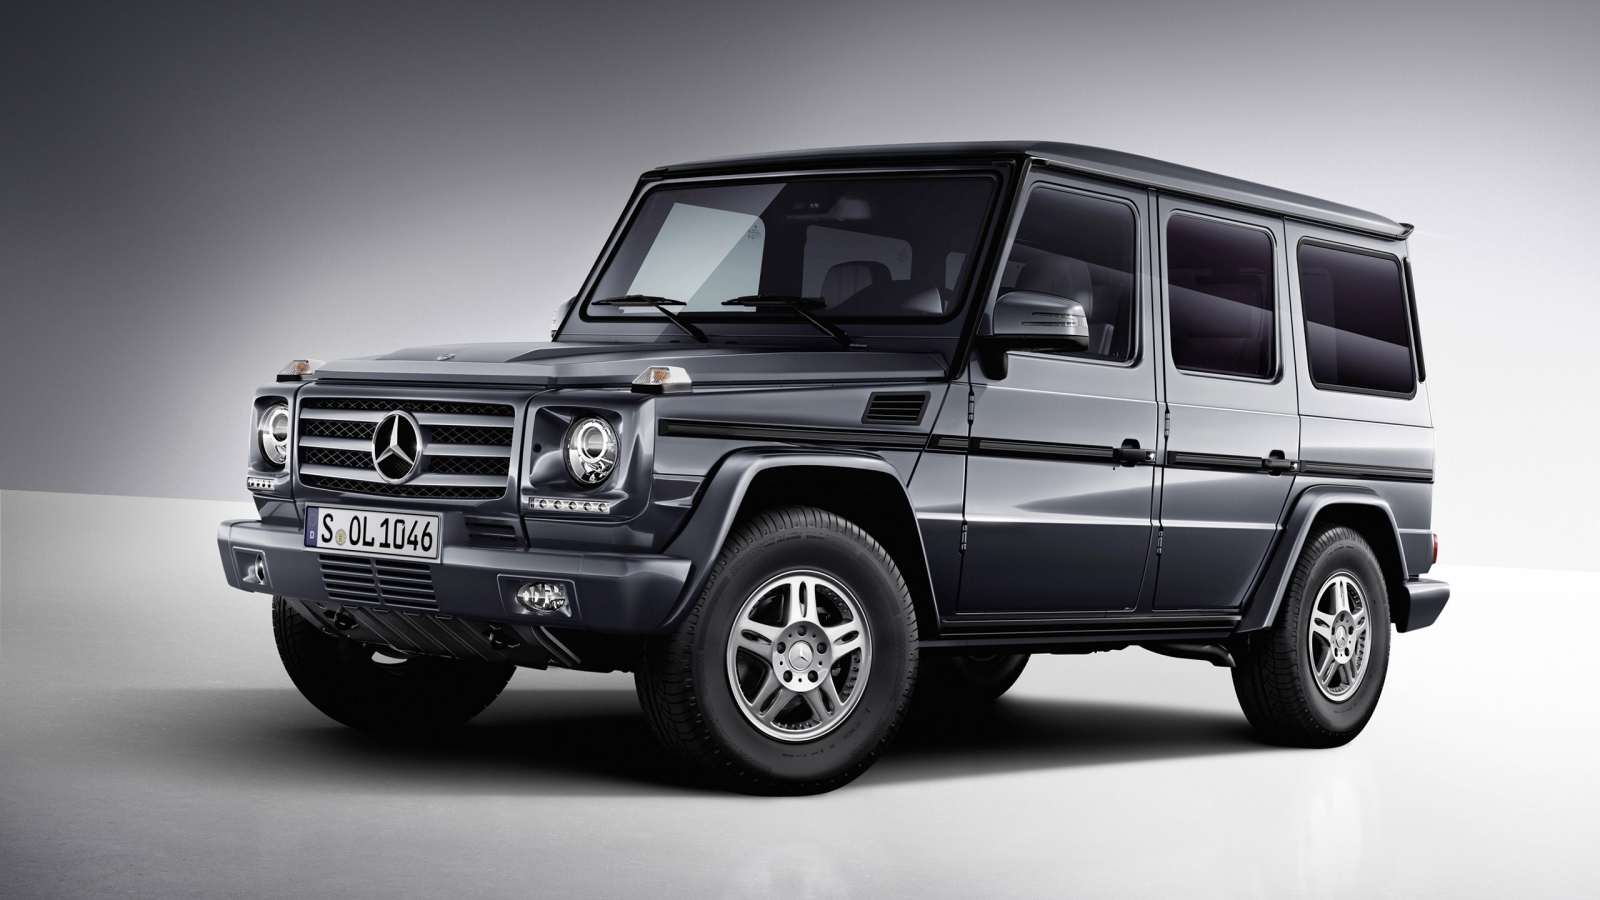 Mercedes Benz G Class Studio 2013 for 1600 x 900 HDTV resolution